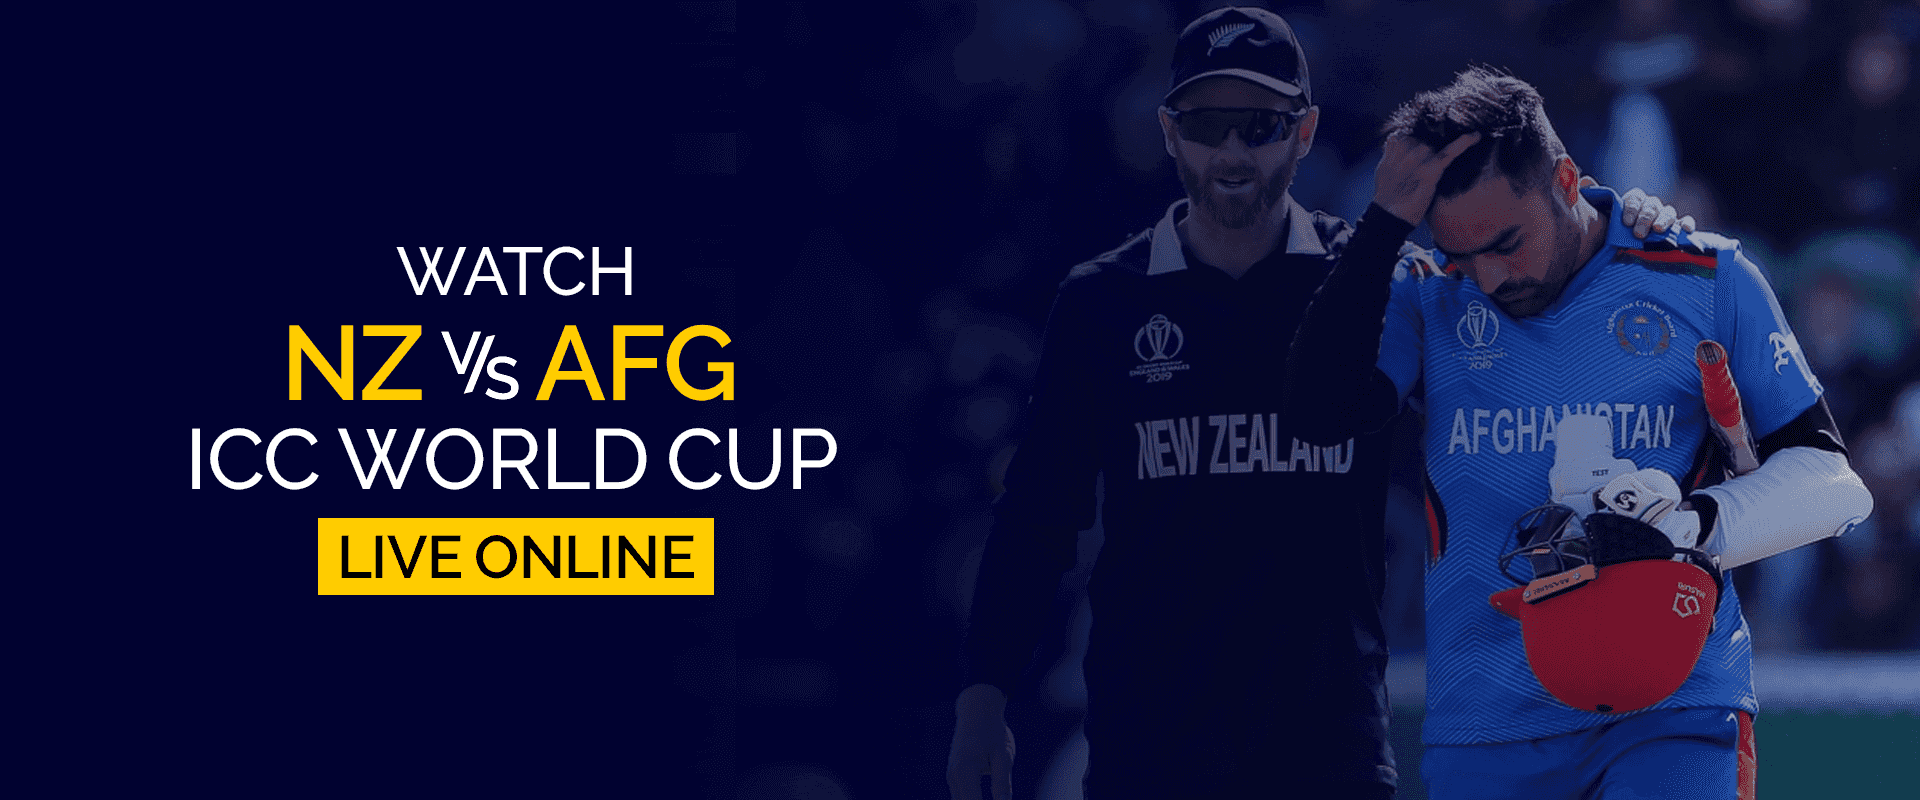 Sehen Sie sich die ICC-Weltmeisterschaft Neuseeland vs. Afghanistan live online an